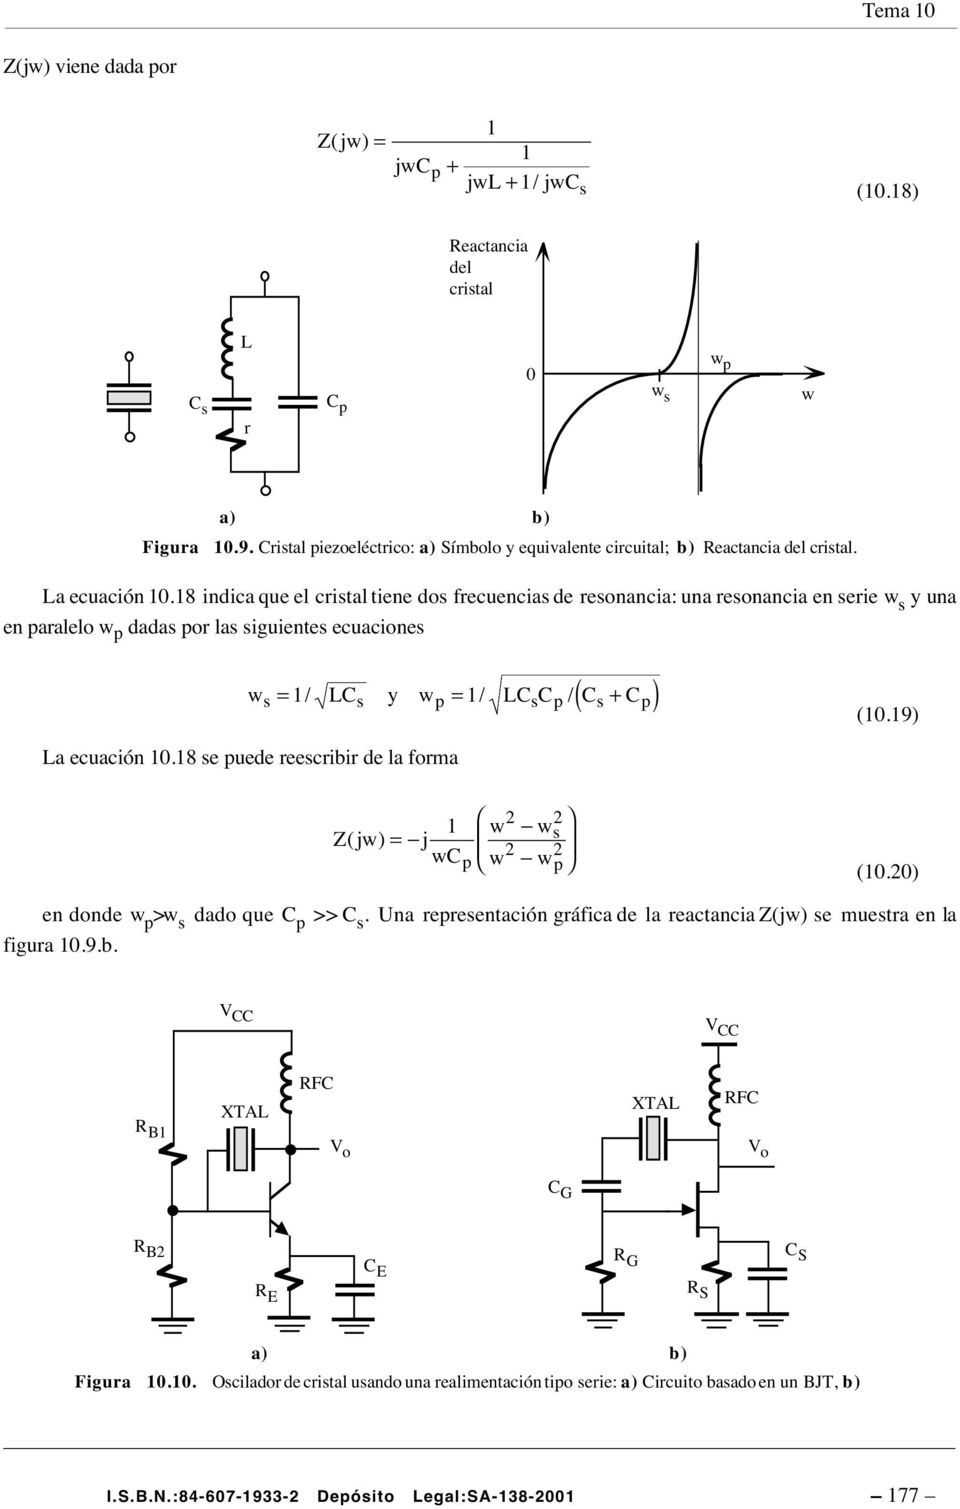 8 indica que el crisal iene dos frecuencias de resonancia: una resonancia en serie w s y una en paralelo w p dadas por las siguienes ecuaciones ( ) ws = / Ly s wp = / L s p/ s + p (0.